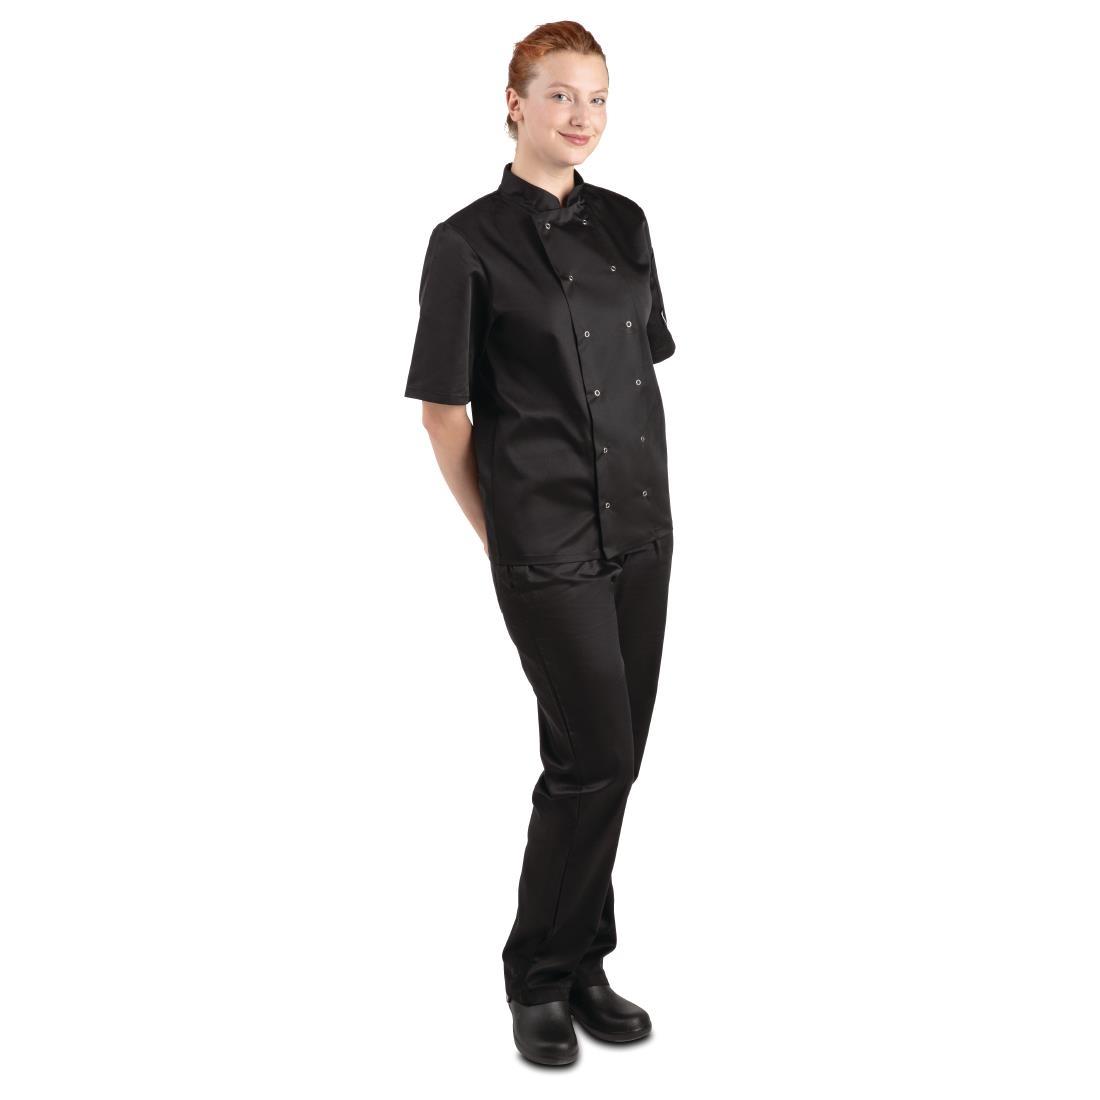 Whites Vegas Unisex Chefs Jacket Short Sleeve Black XS - A439-XS  - 6